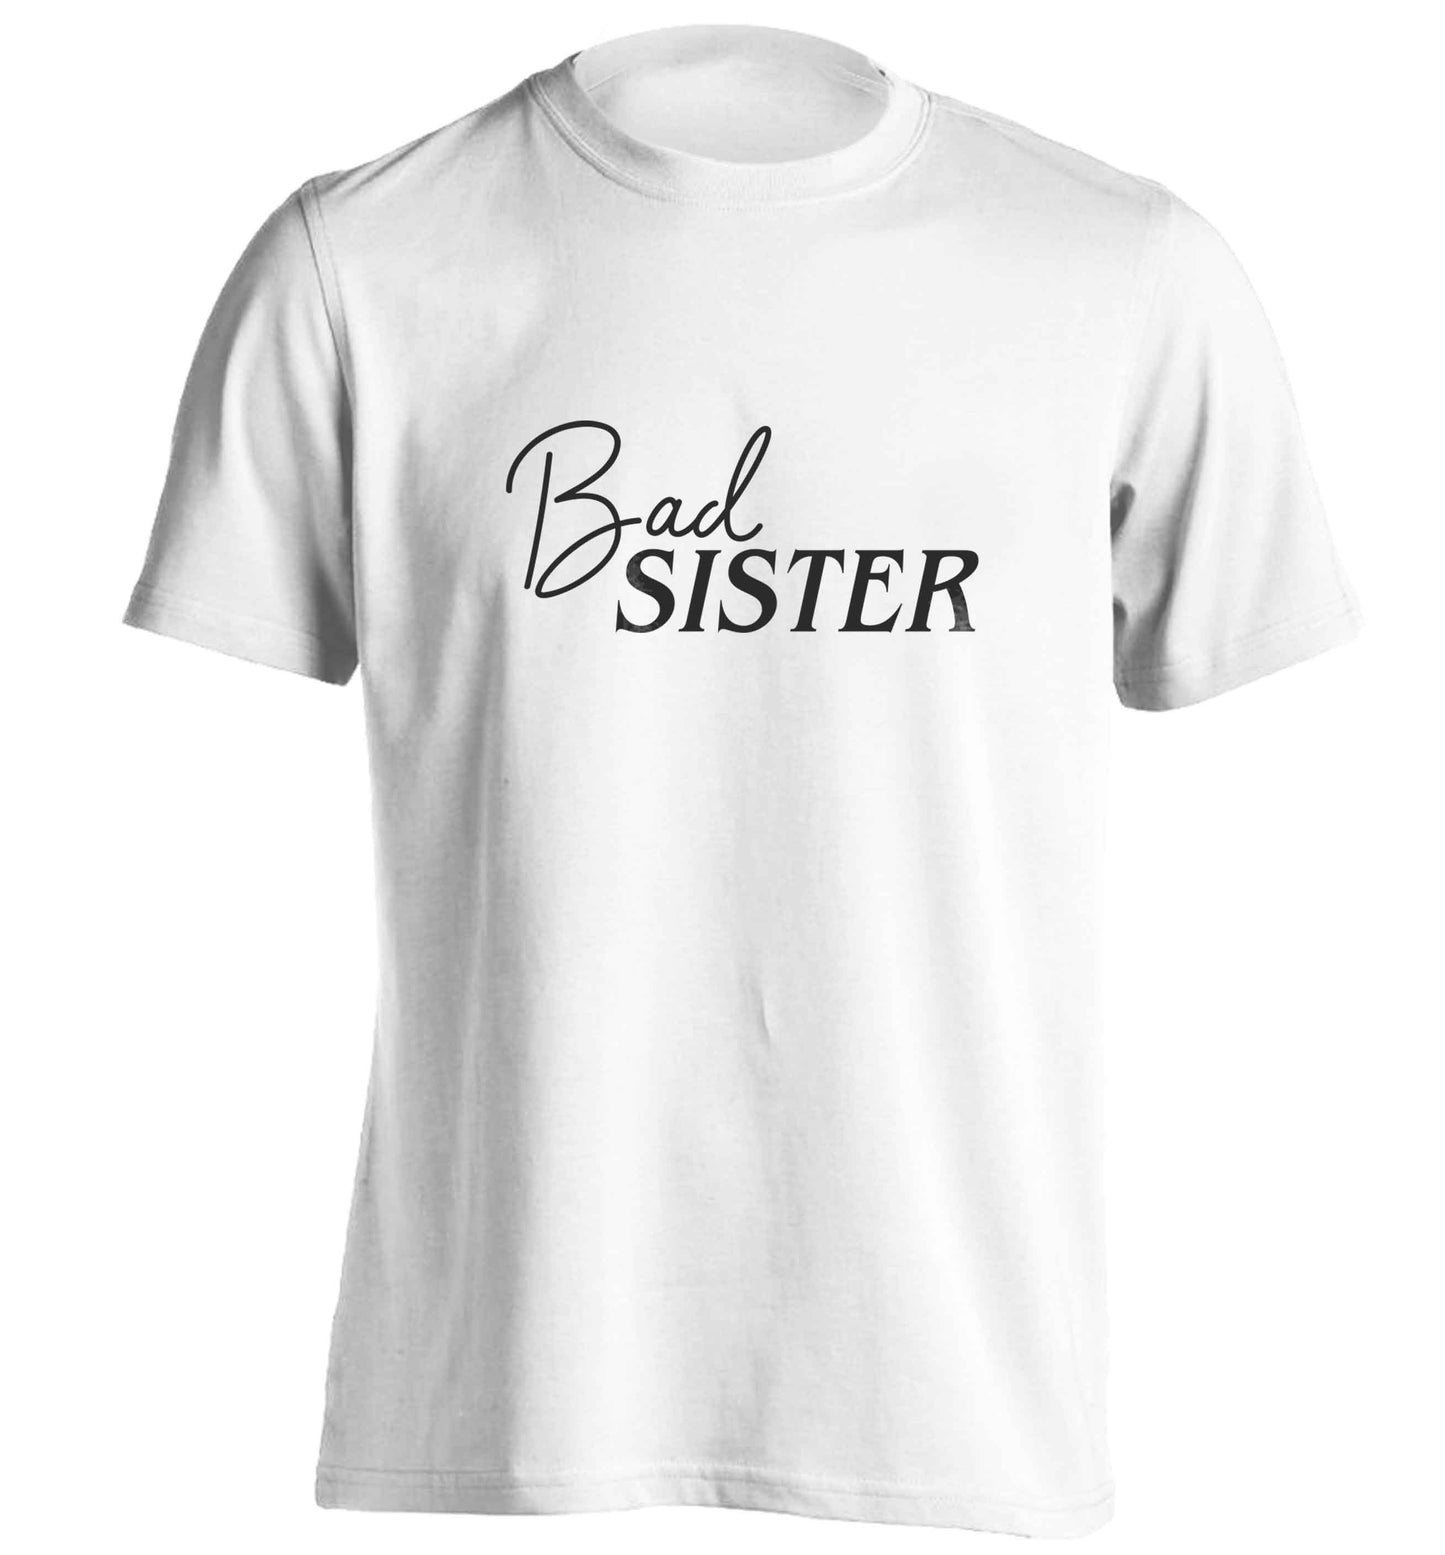 Bad sister adults unisex white Tshirt 2XL